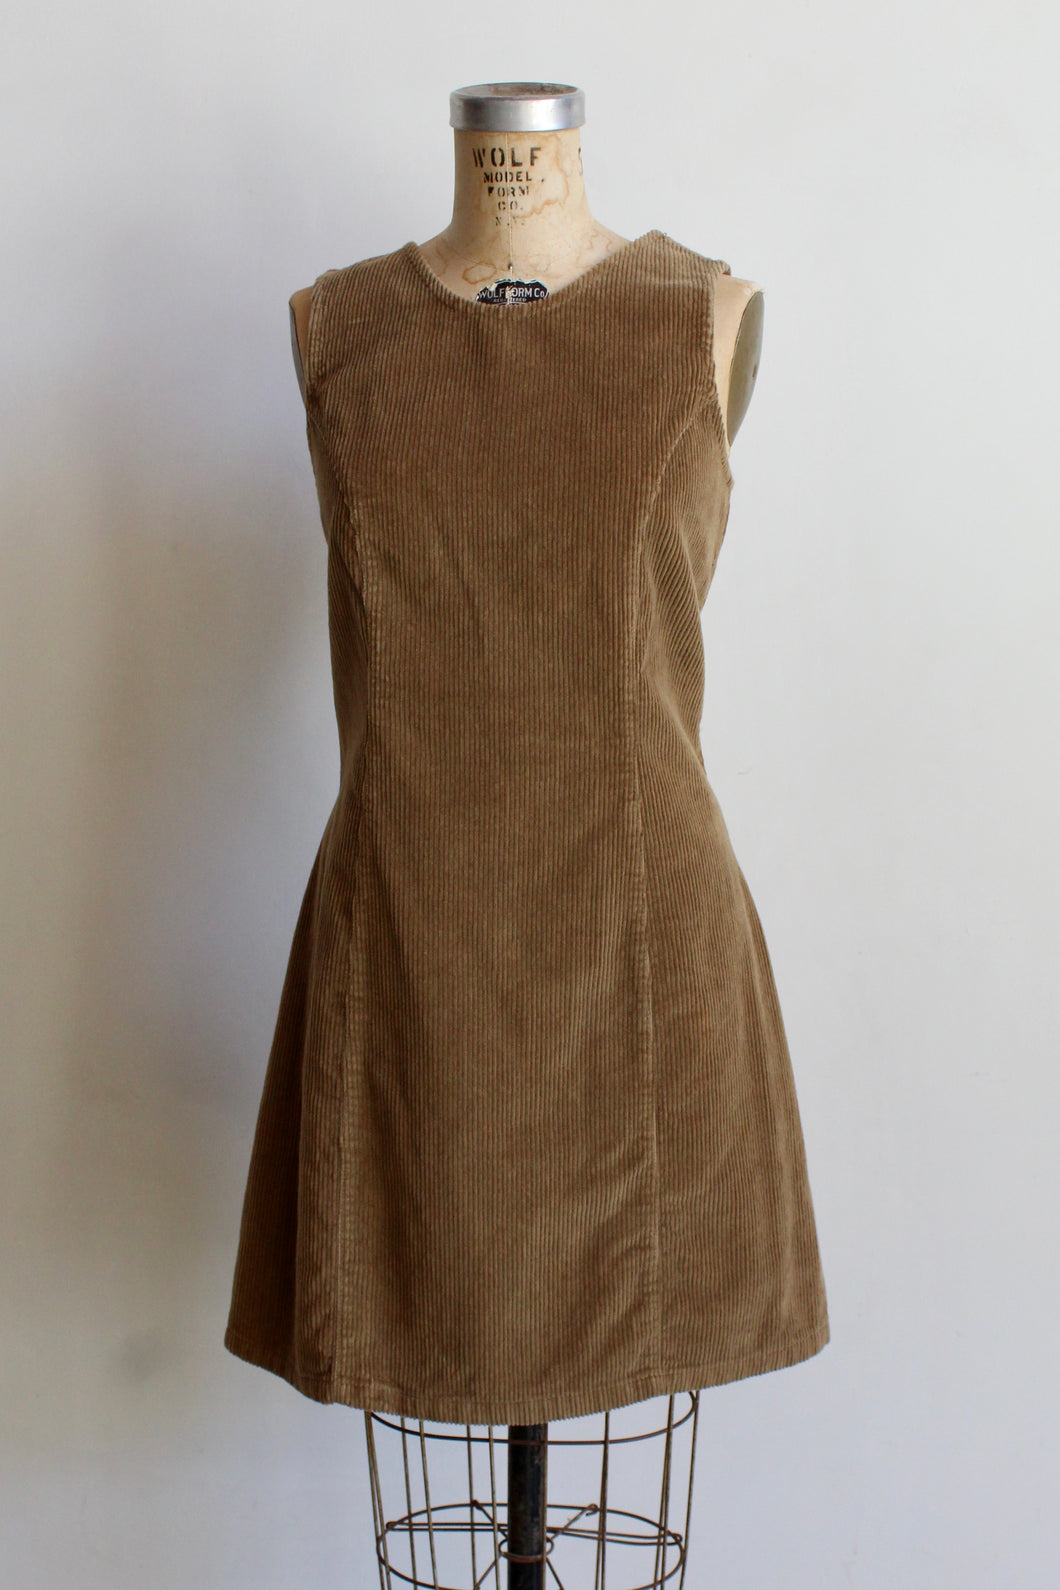 1970s Tan Corduroy Jumper Dress